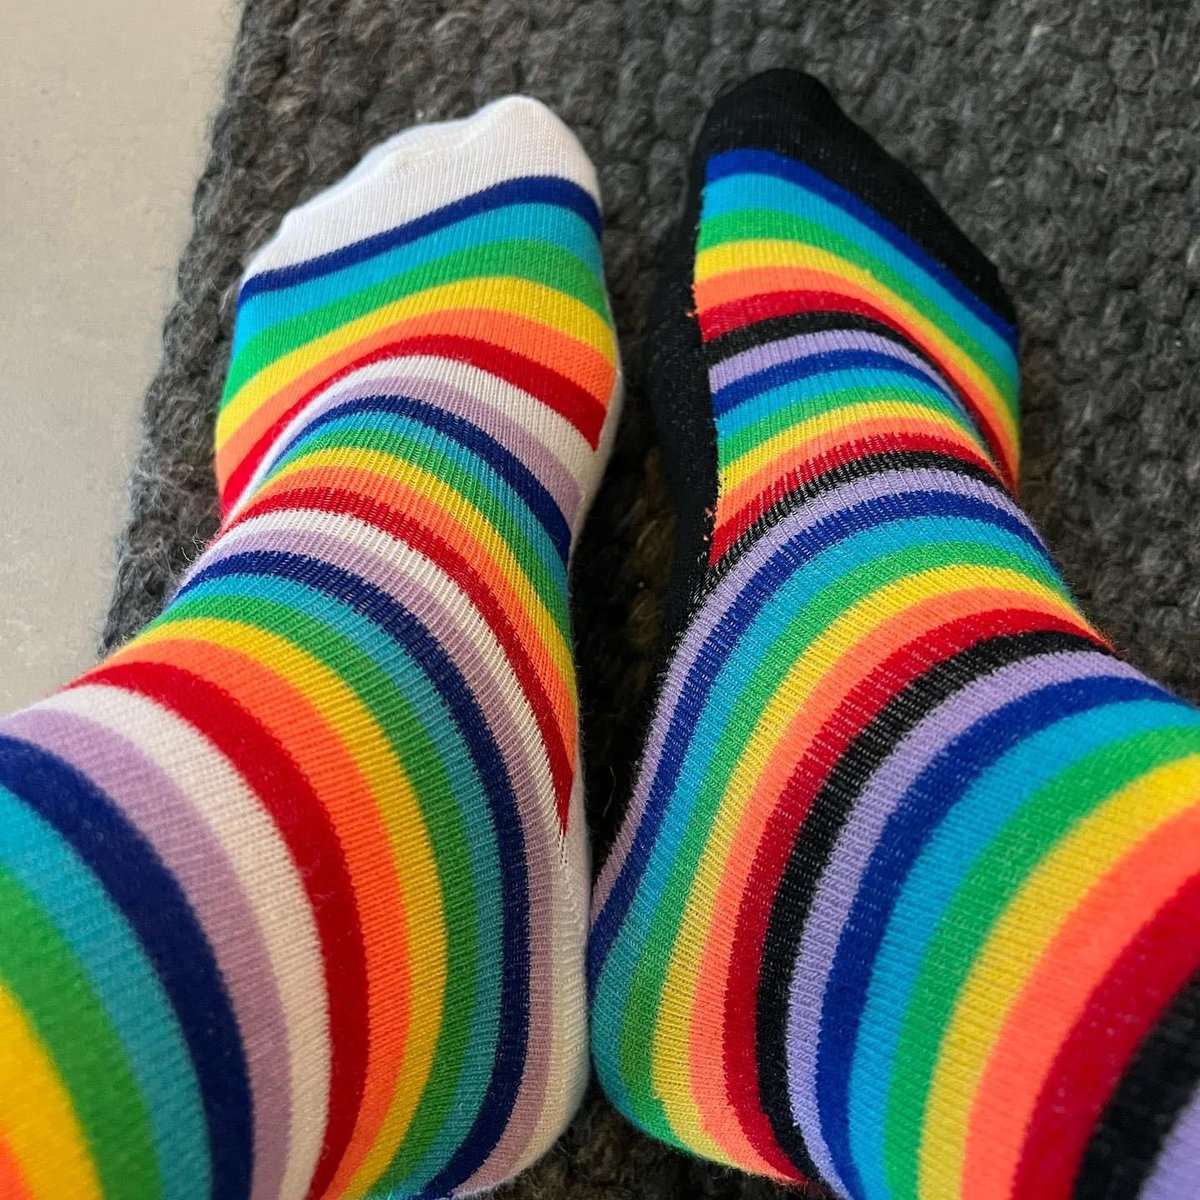 “Usamos calcetines distintos, pero todos somos iguales.”

#DíaMundialDelSíndromeDeDown